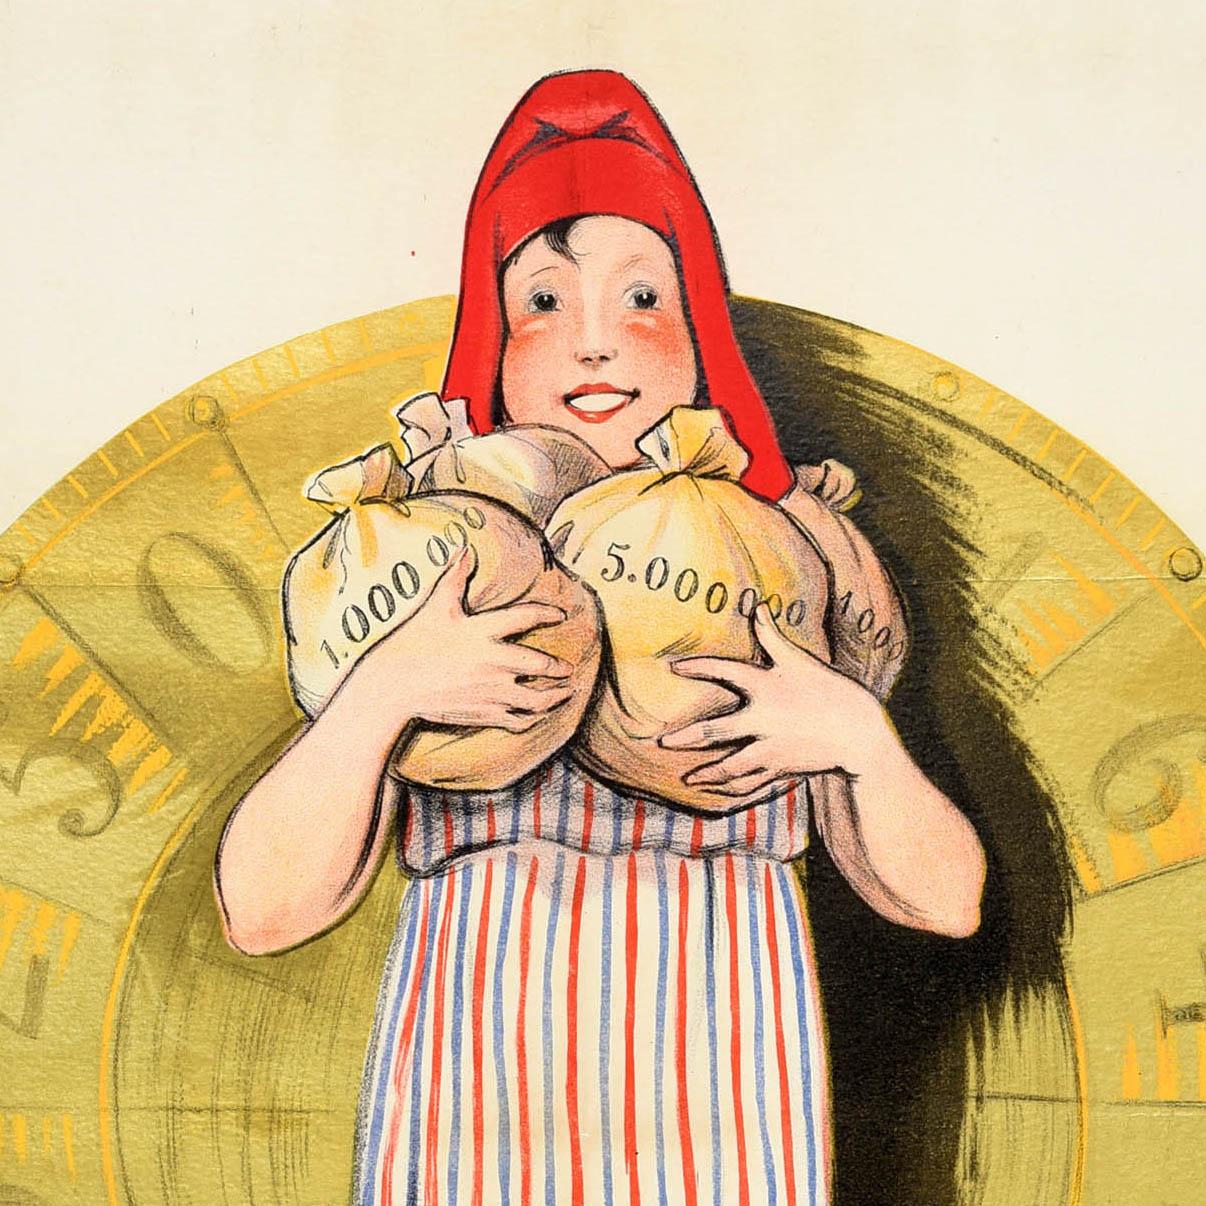 Affiche publicitaire originale vintage pour la Loterie Nationale française représentant une personne souriante vêtue d'une tunique rayée et d'un bonnet rouge, tenant des sacs d'argent lourds remplis de pièces marquées 1 000 000 et 5 000 000 devant